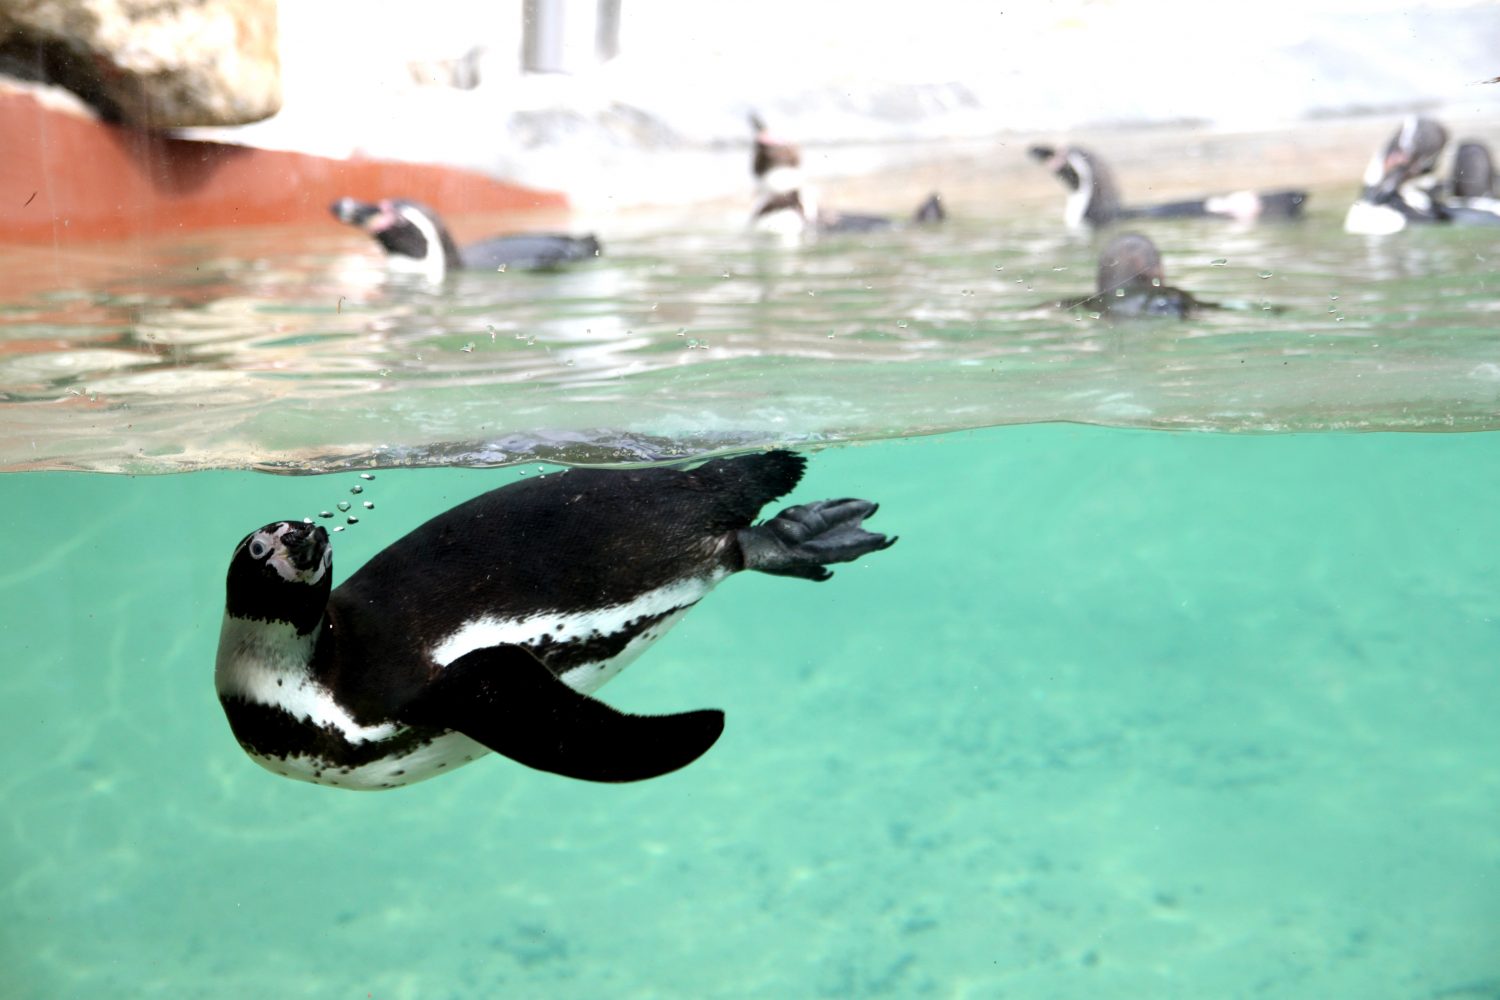 Pinguin at Zoo santo inacio Porto